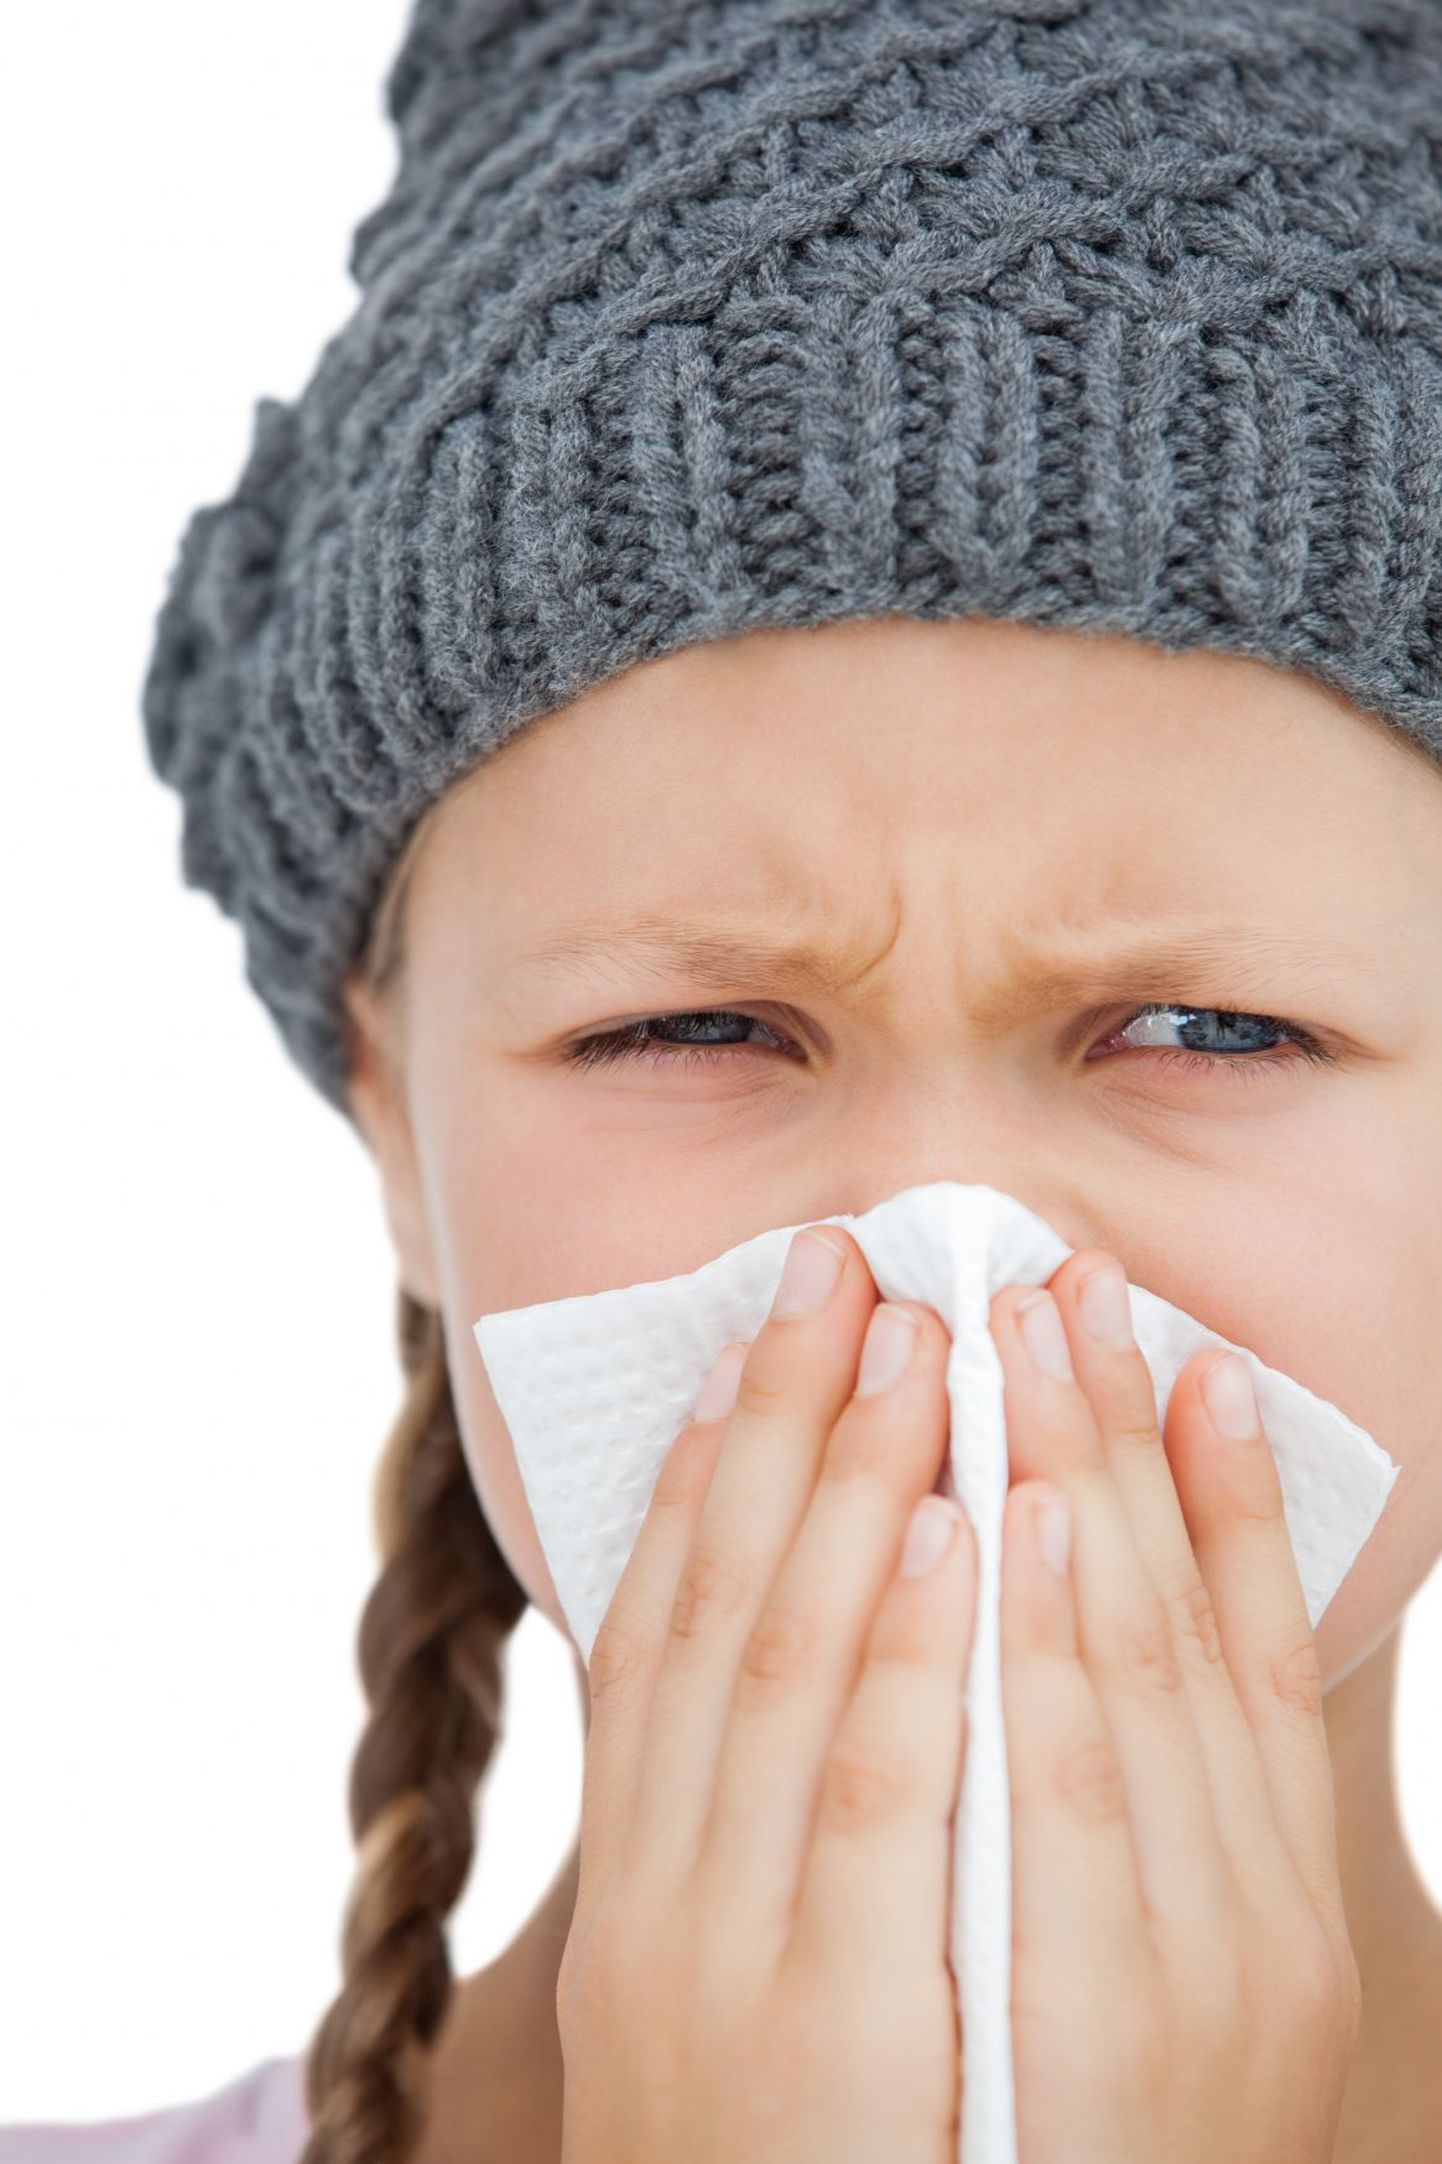 Suur osa koolilastest loodab grippi ja sellega kaasnevaid külmetushaigusi ennetada vaid kätepesuga või siis tervislikult toitudes ja elades.